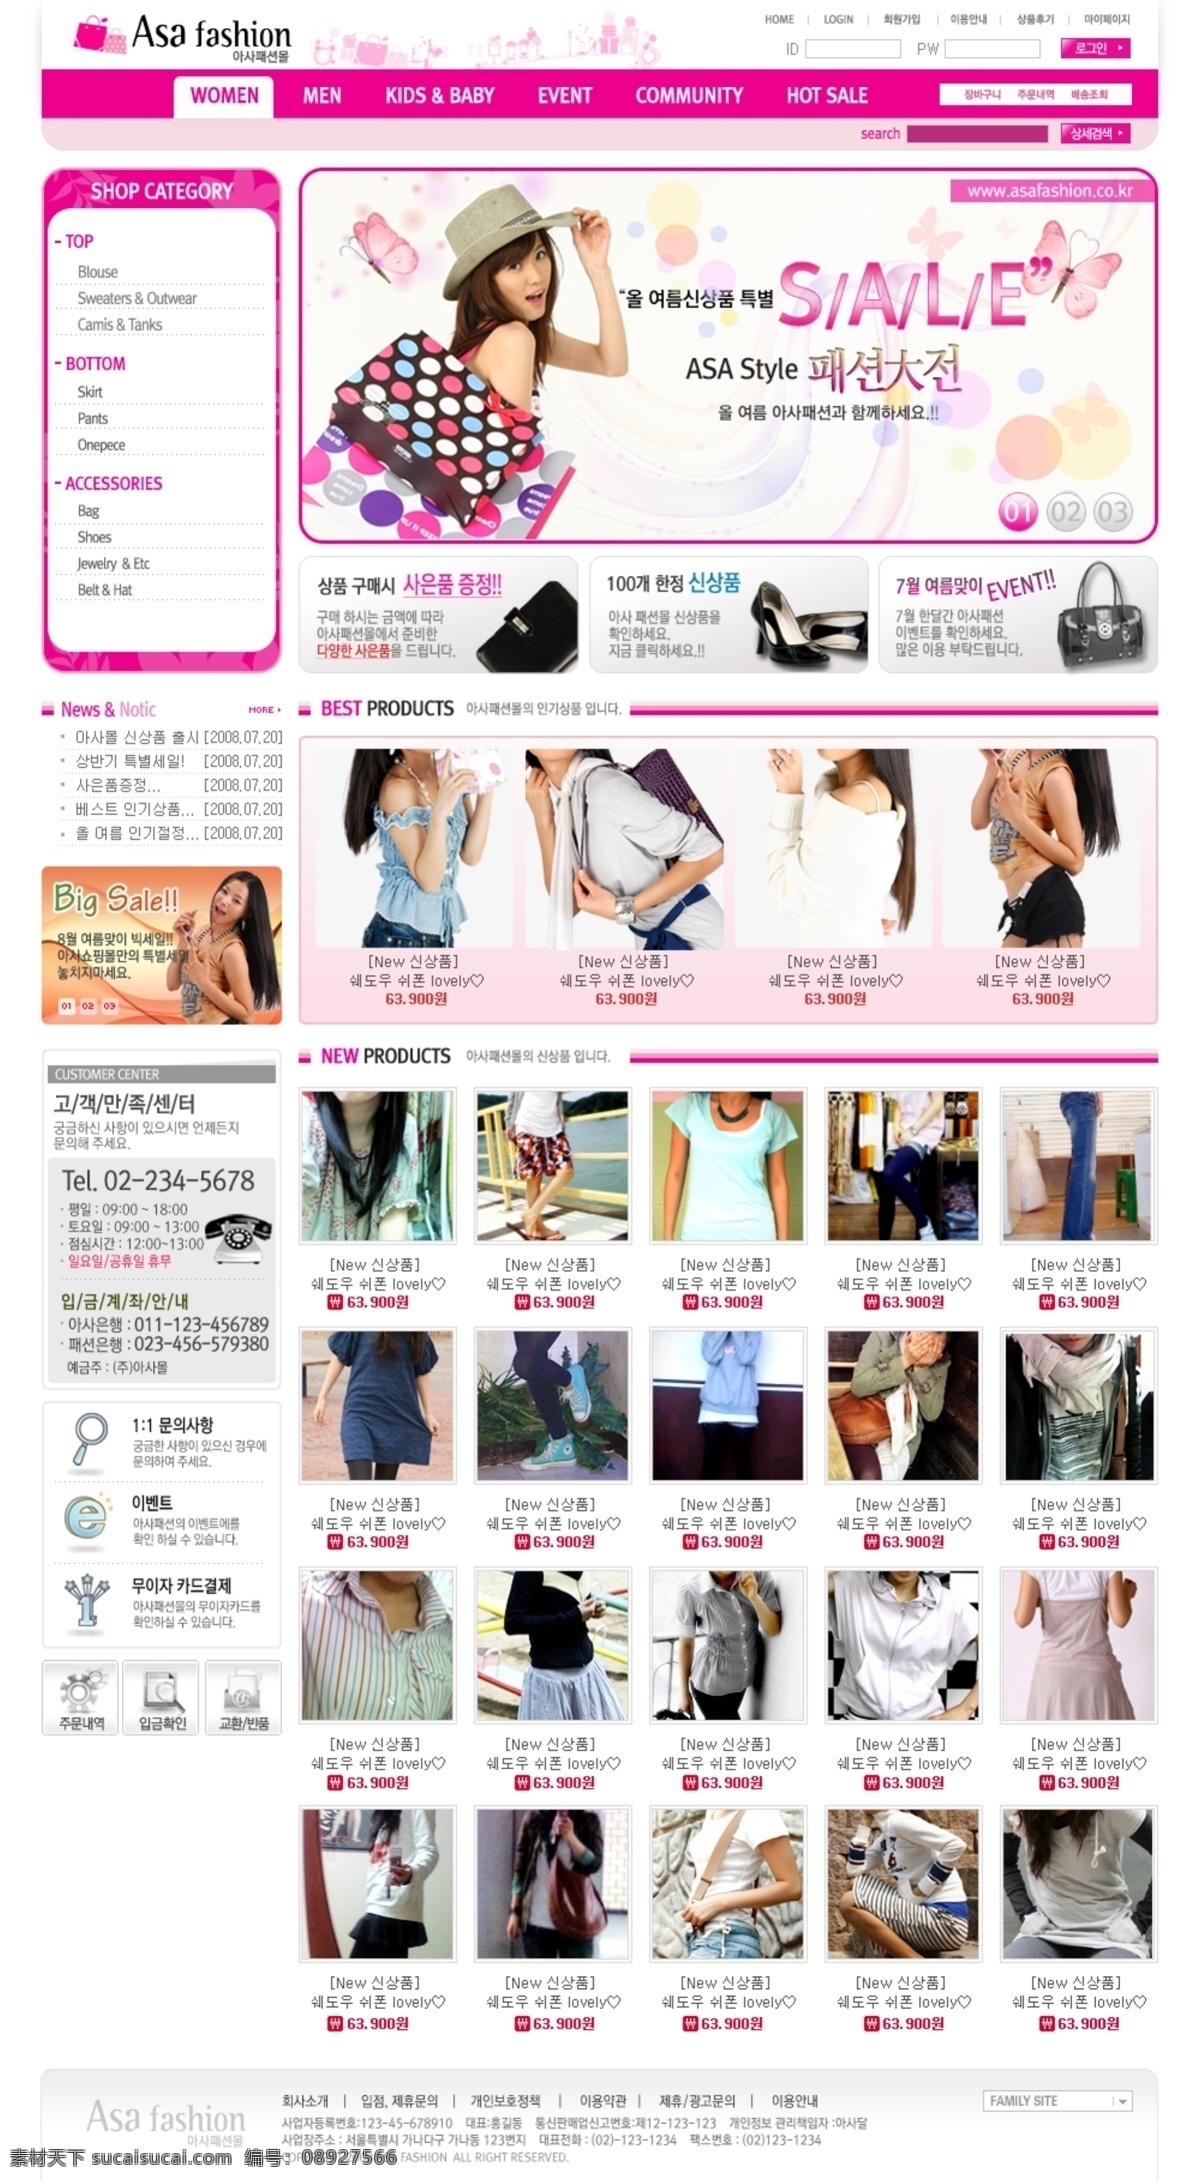 粉红 女性 时装 商城 网页模板 韩国风格 粉红色色调 网页素材